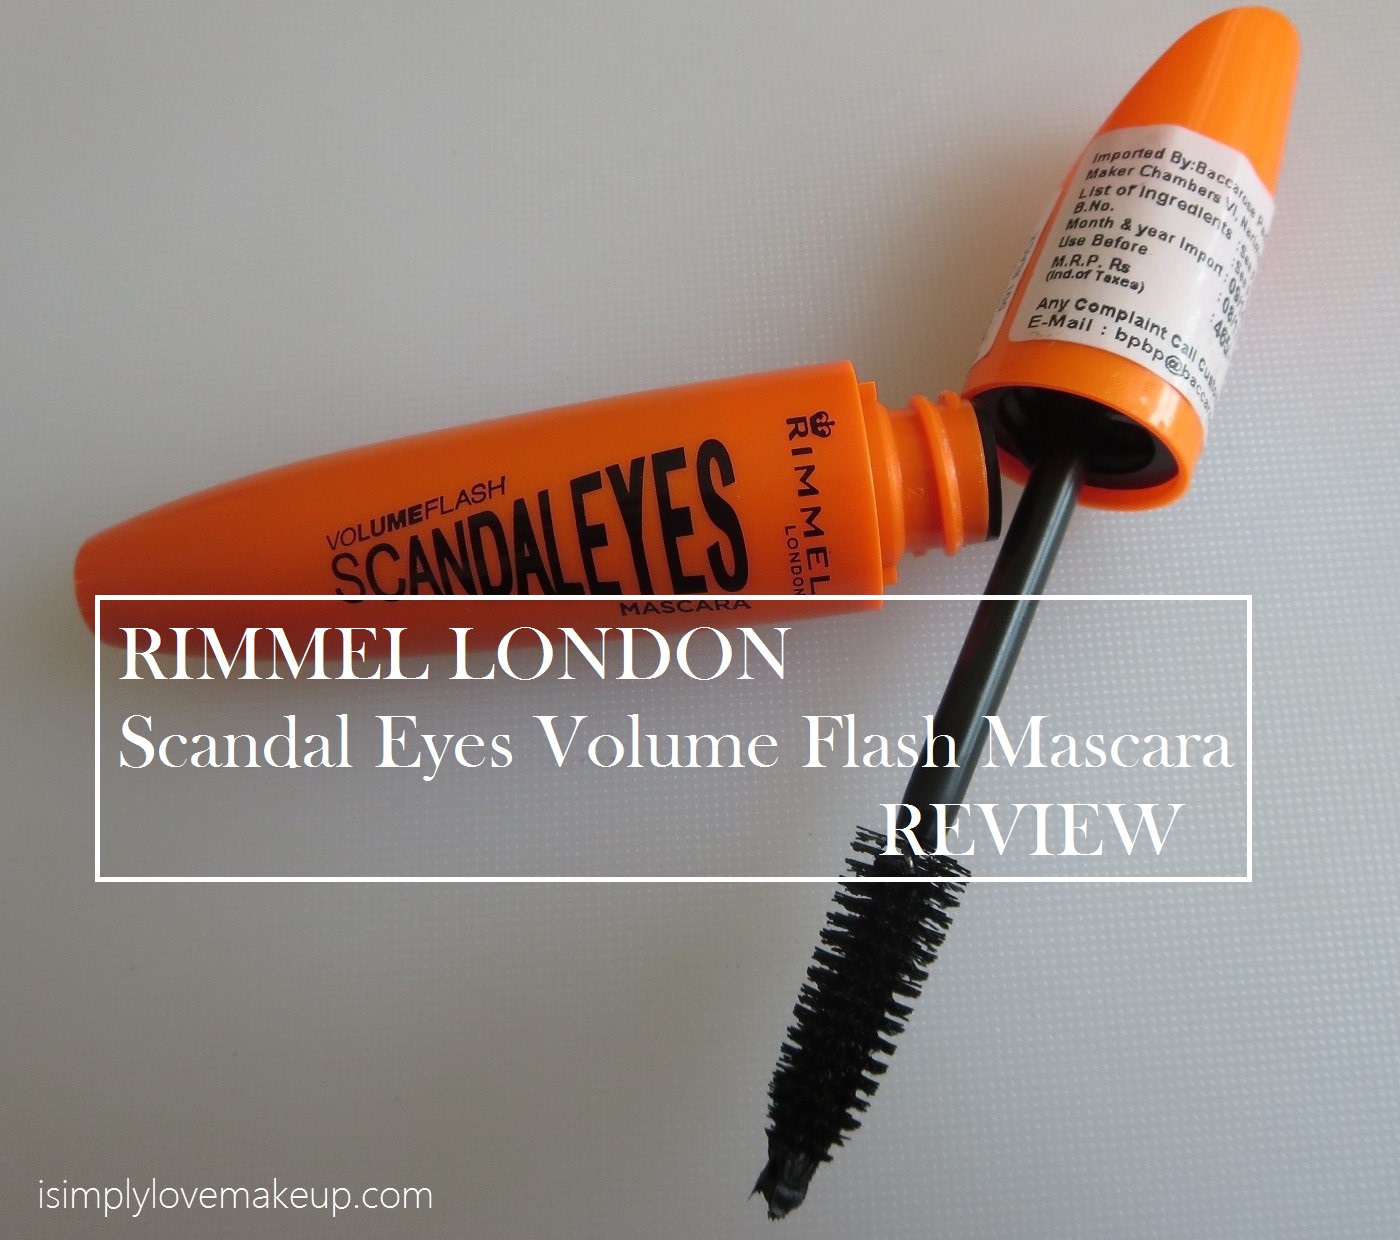 Rimmel London Scandal Eyes Volume Flash Mascara